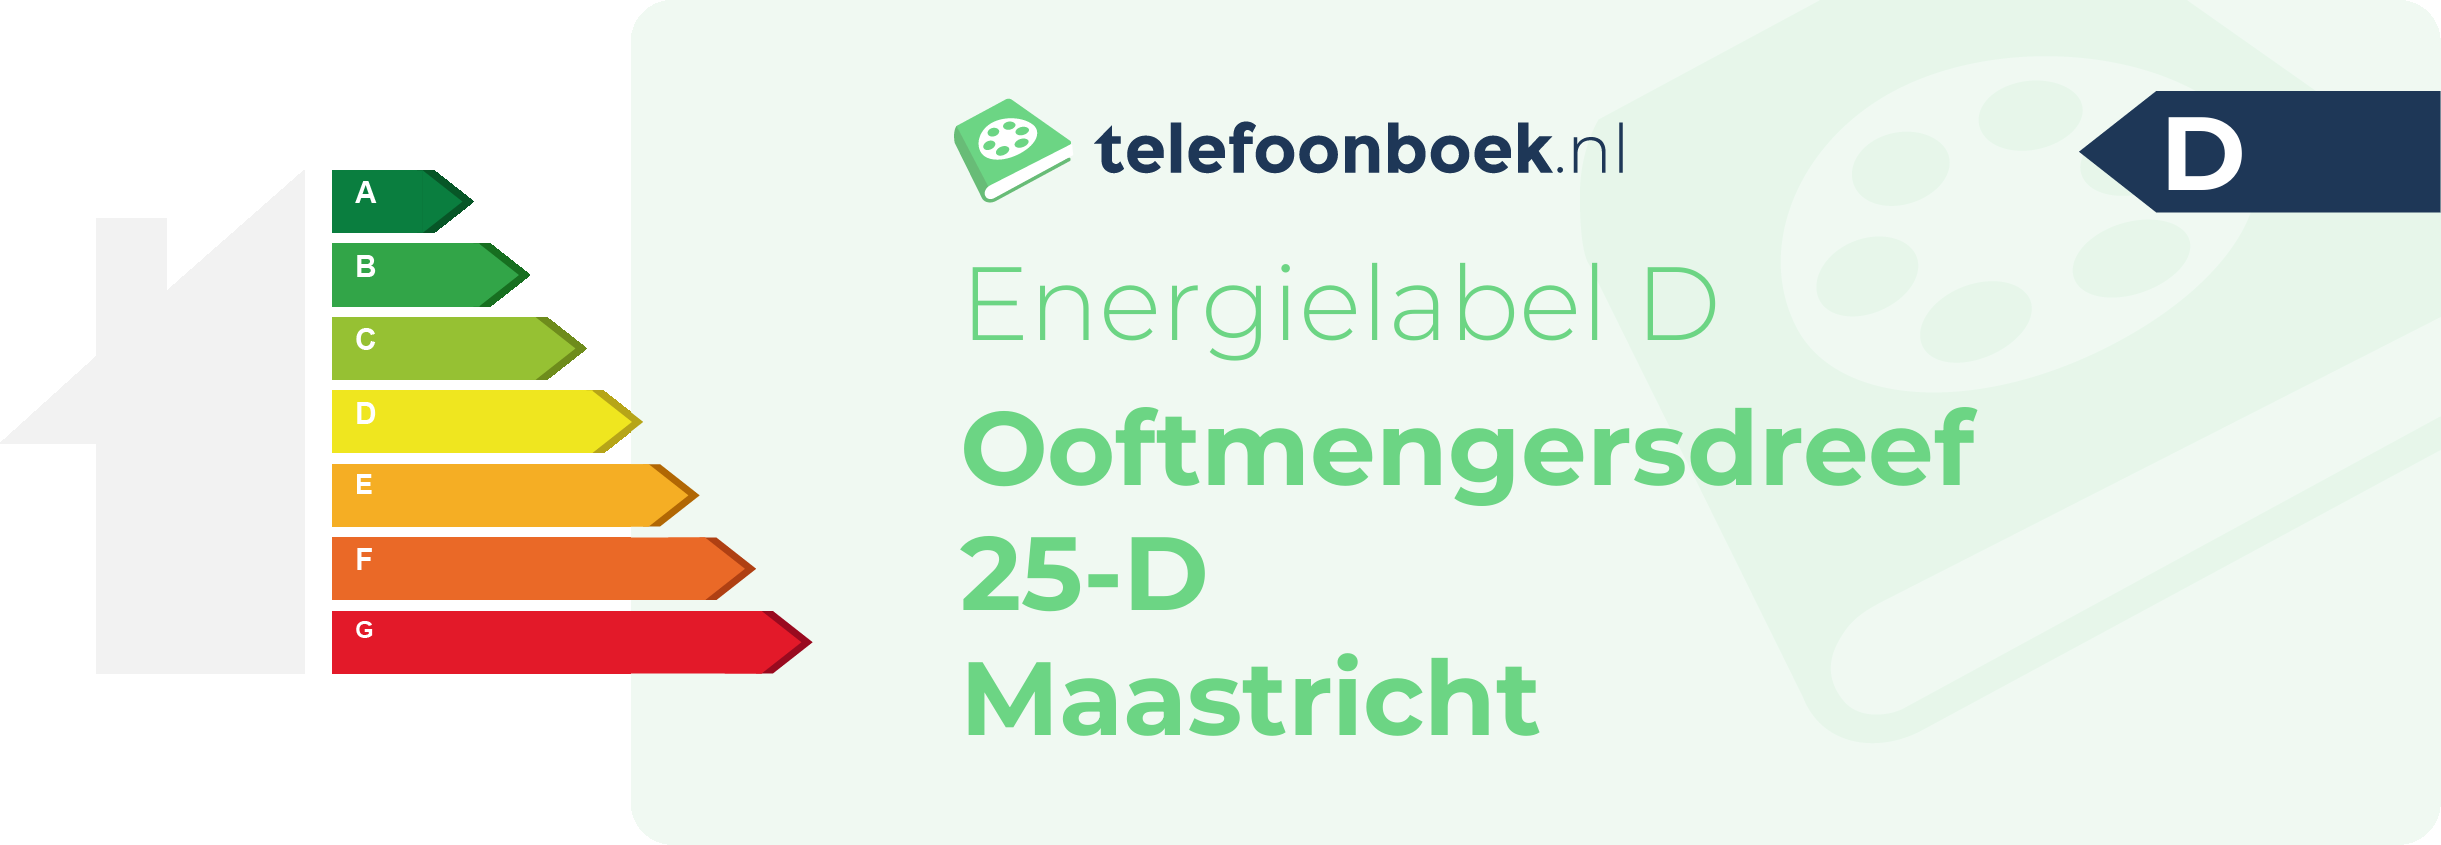 Energielabel Ooftmengersdreef 25-D Maastricht